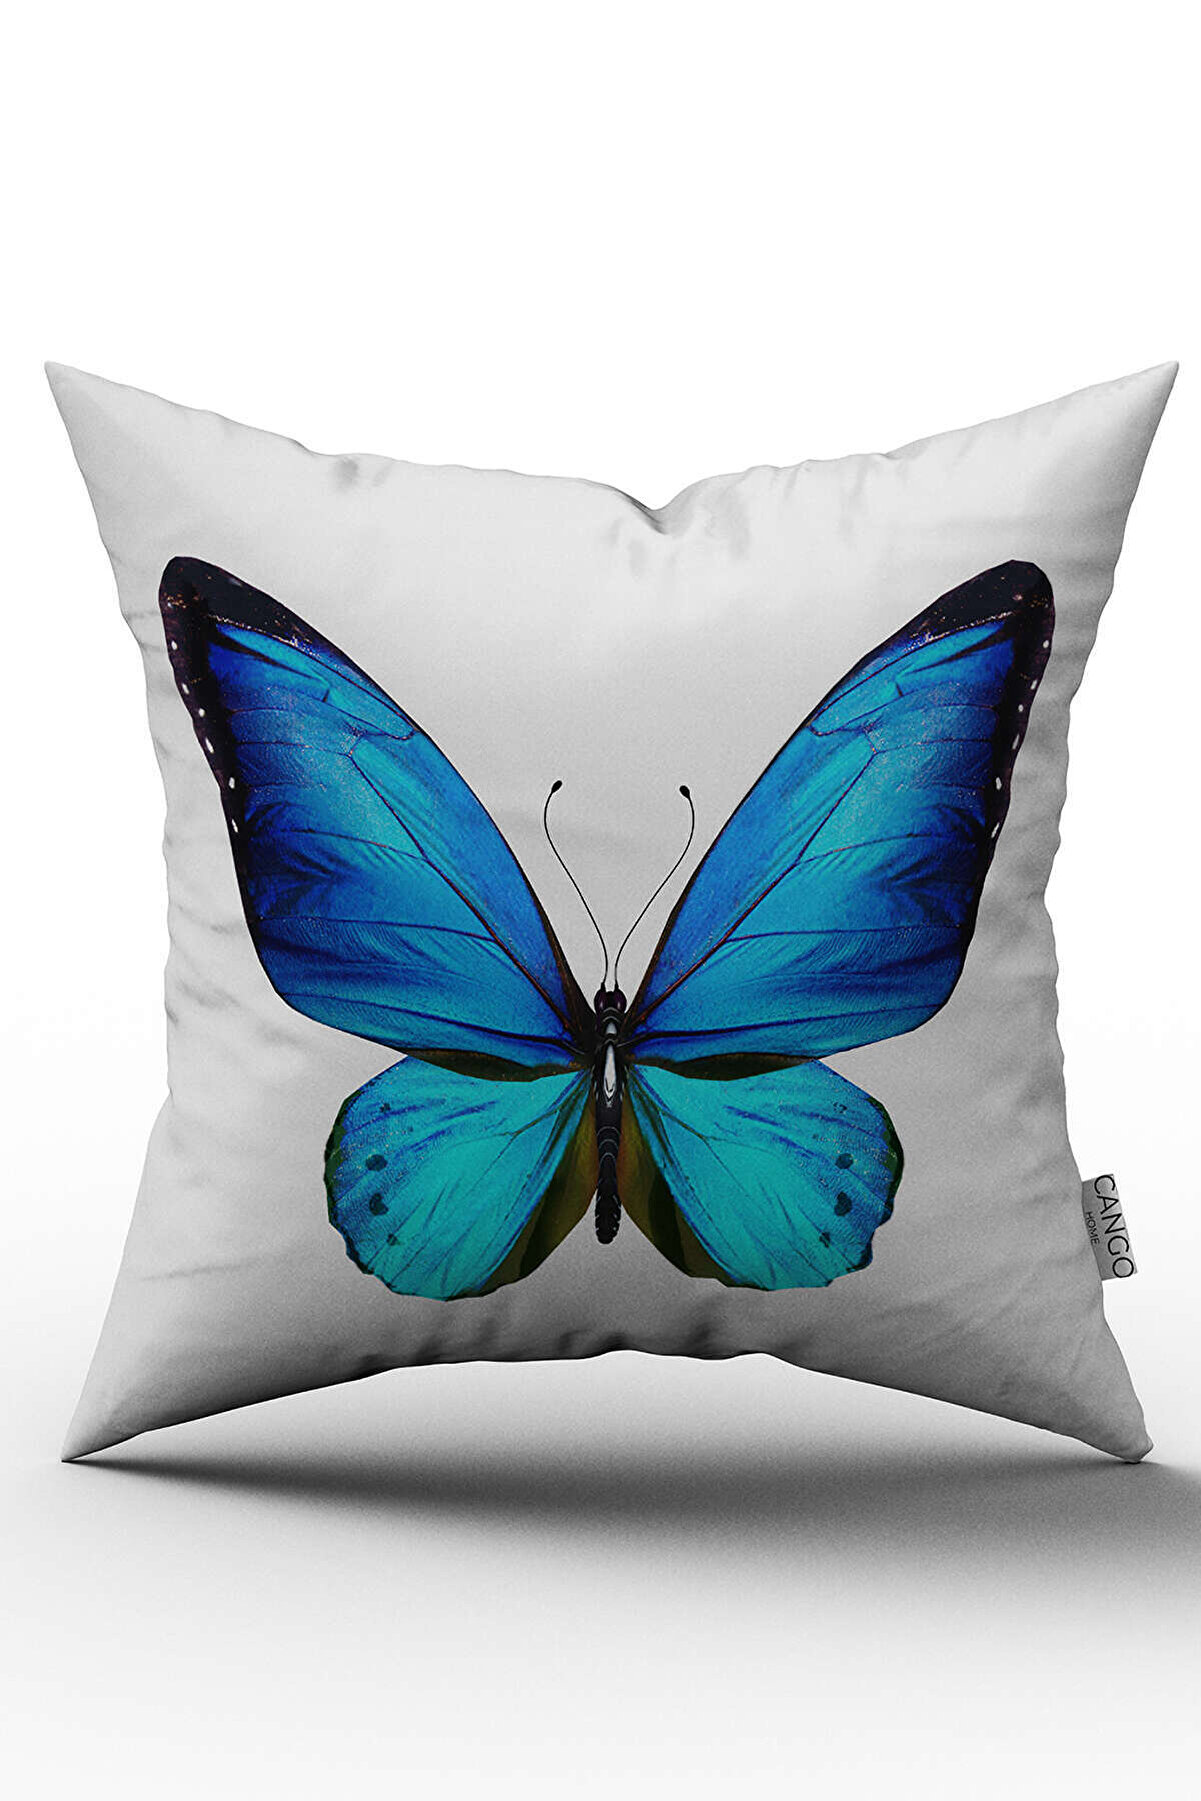 Cango Home Çift Taraflı Mavi Kelebek Desenli Dijital Baskılı Kırlent Kılıfı - Otyk495-ct